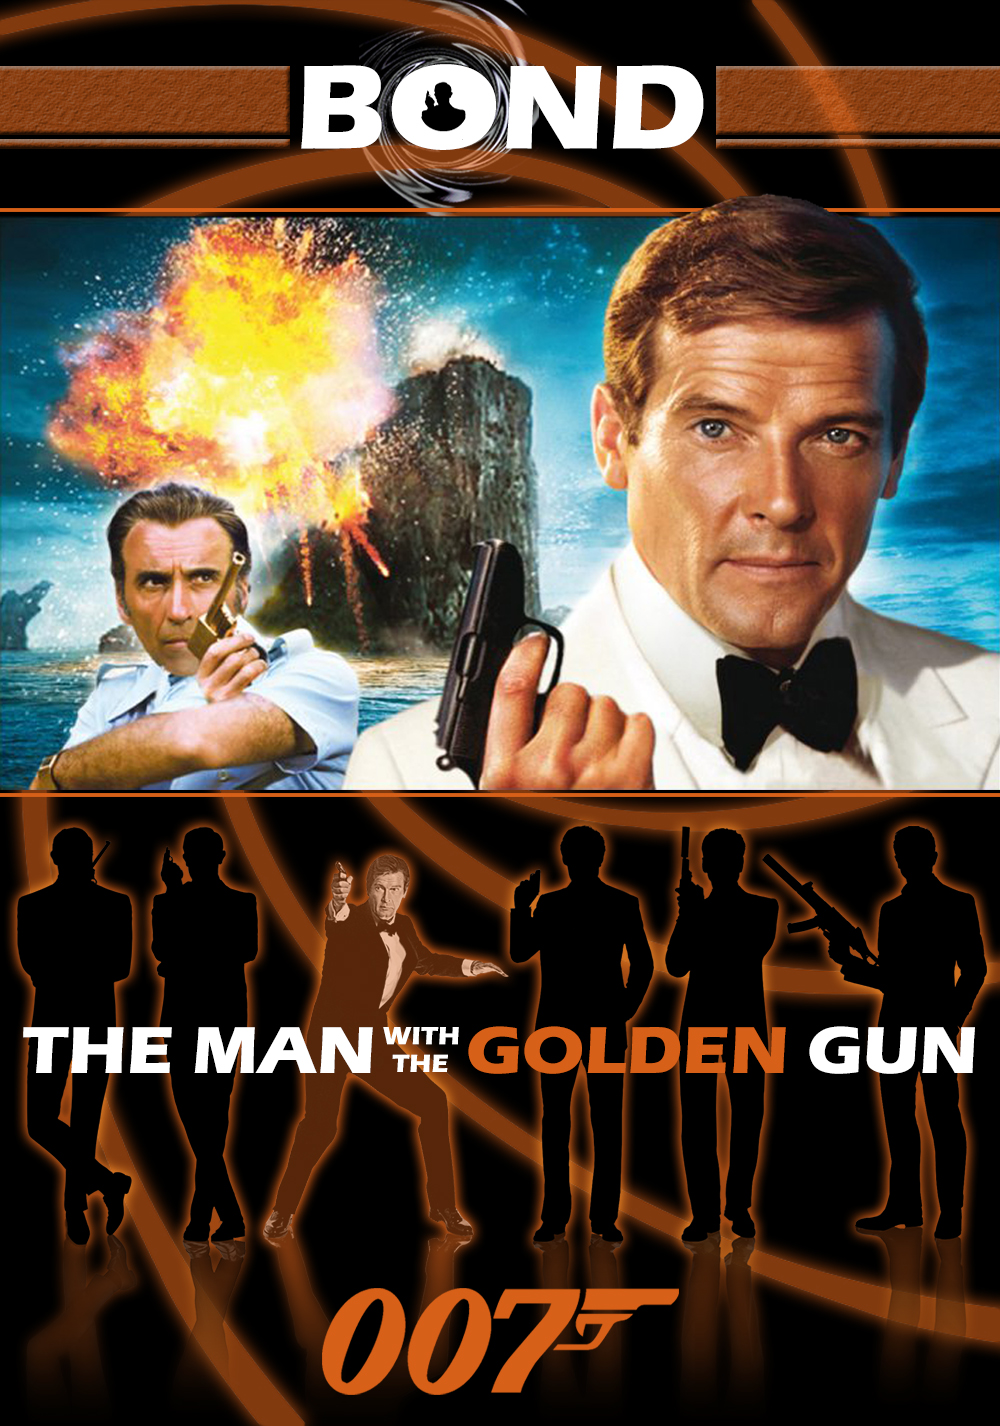 The Man with the Golden Gun Art